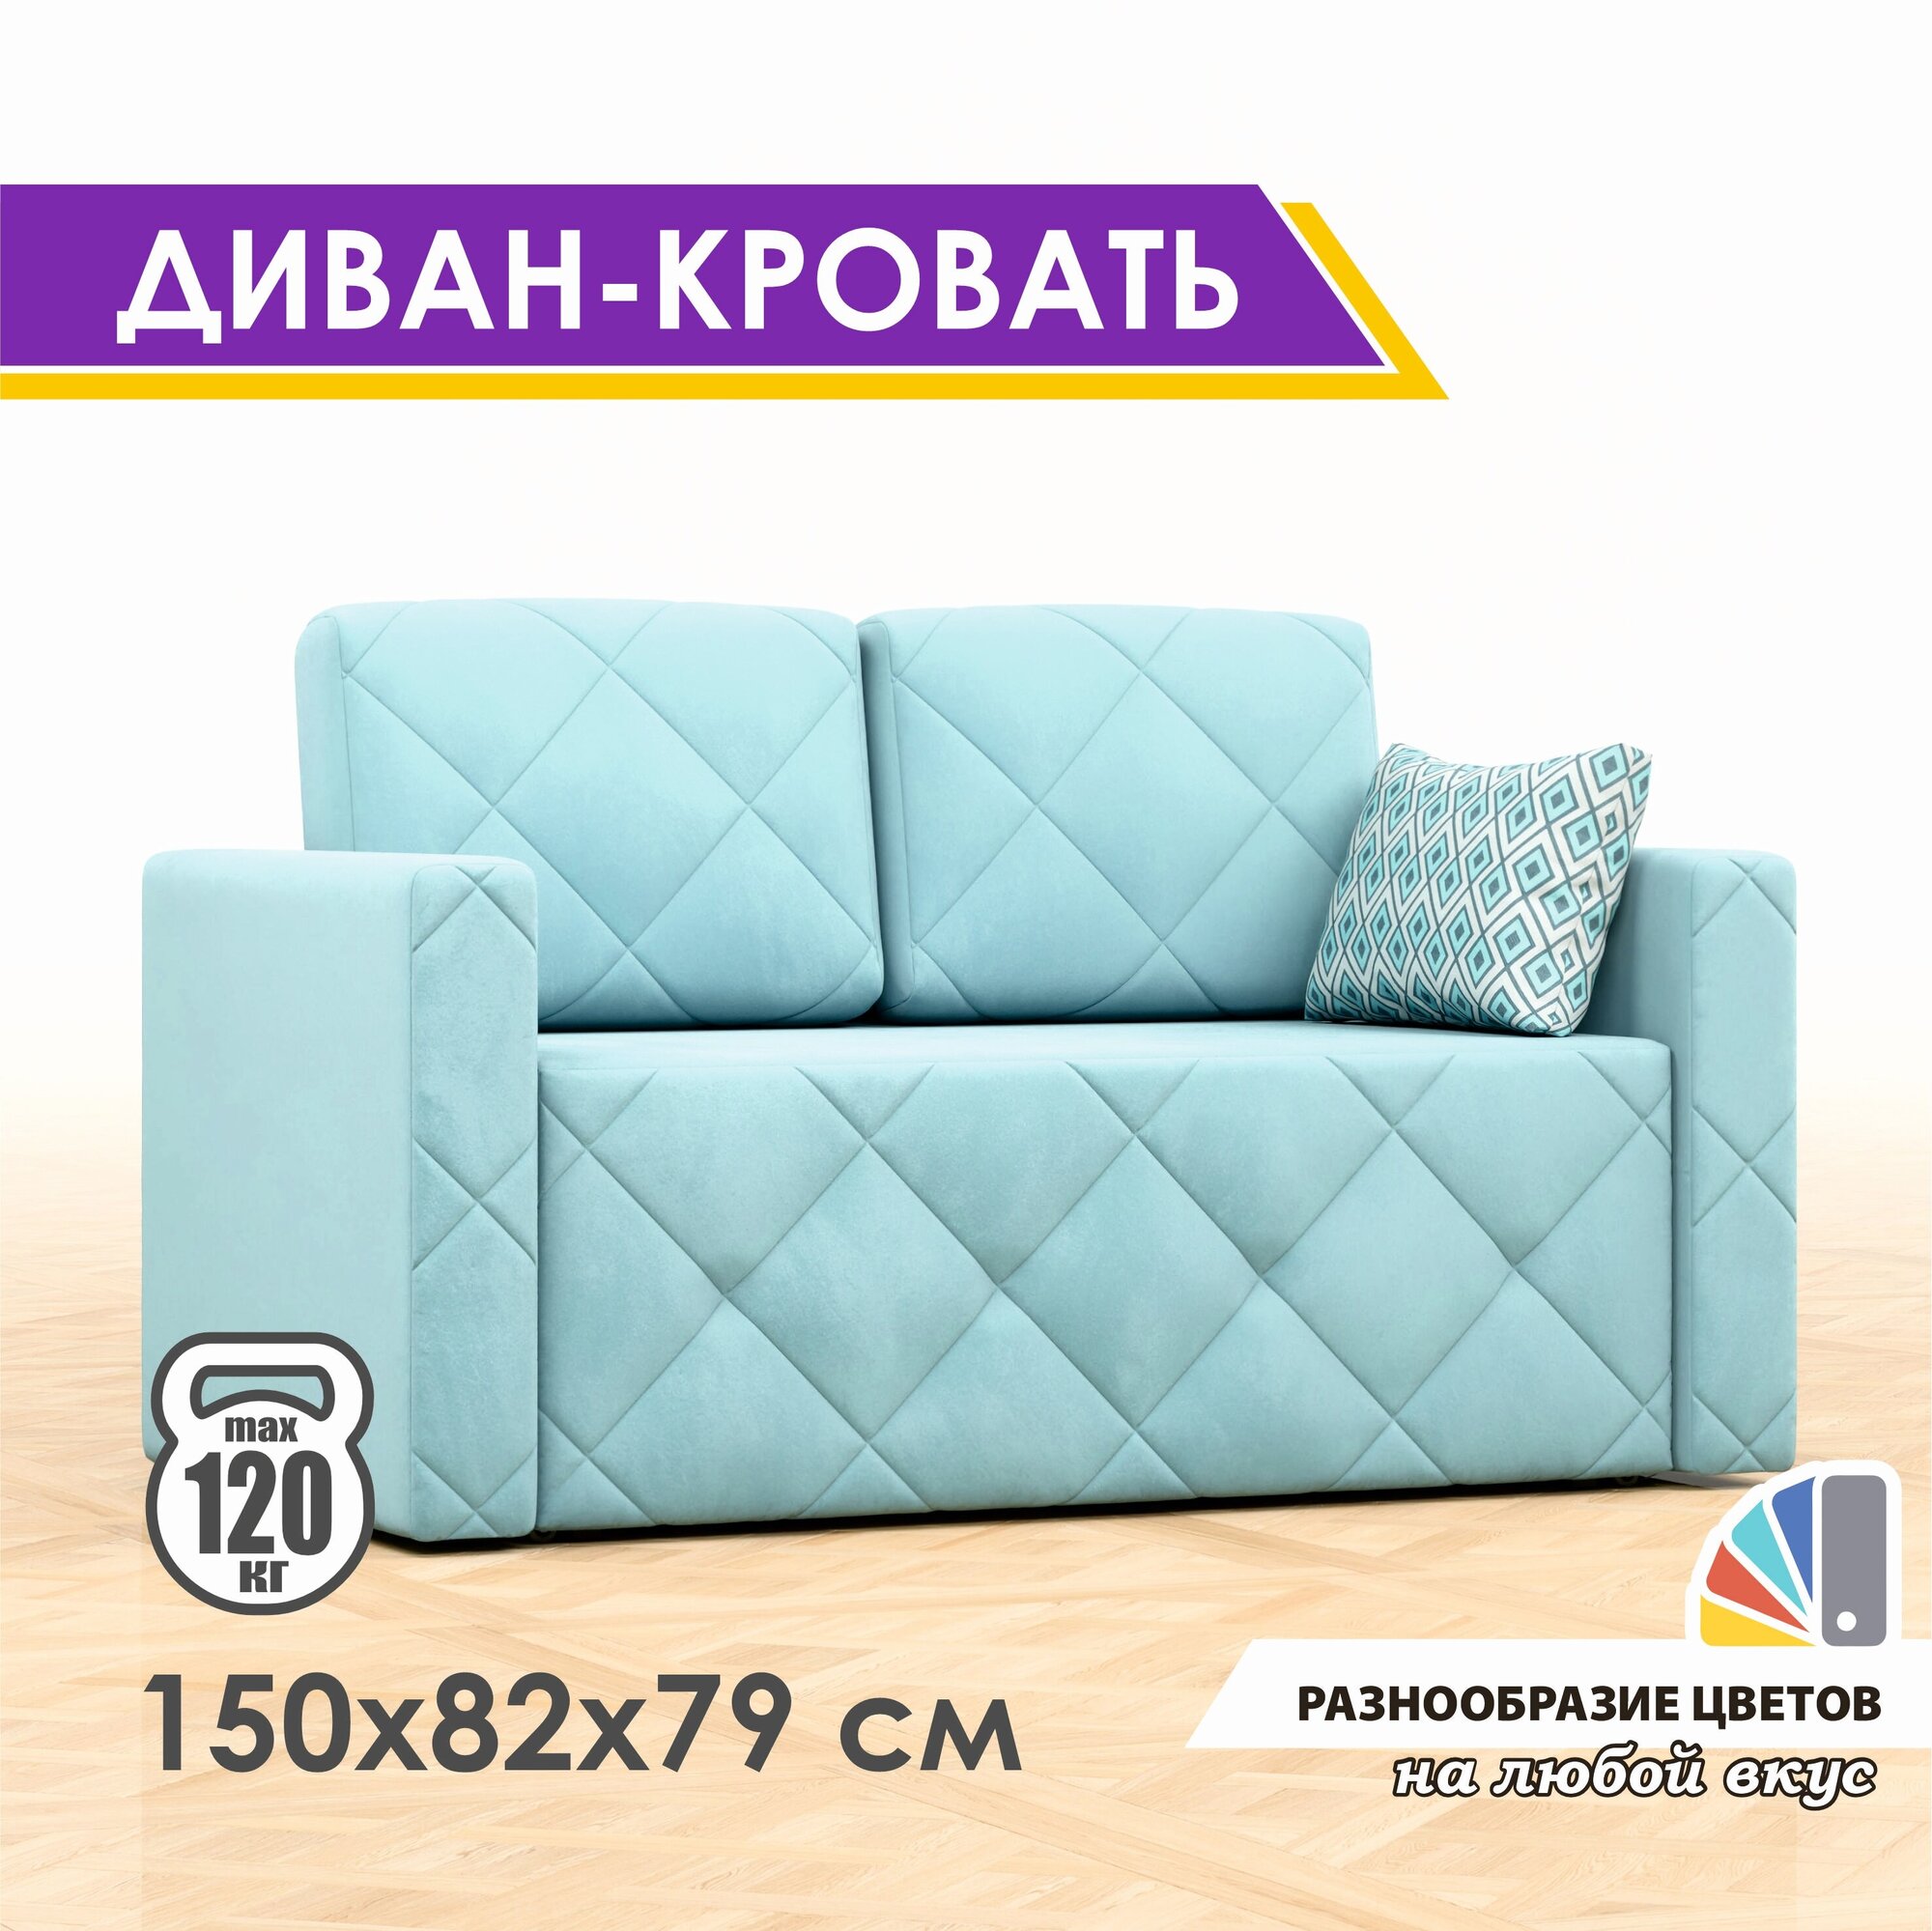 Раскладной диван-кровать GOSTIN Luxor 120х79х82, выкатной диван трансформер для кухни, детский диван, Velutto44